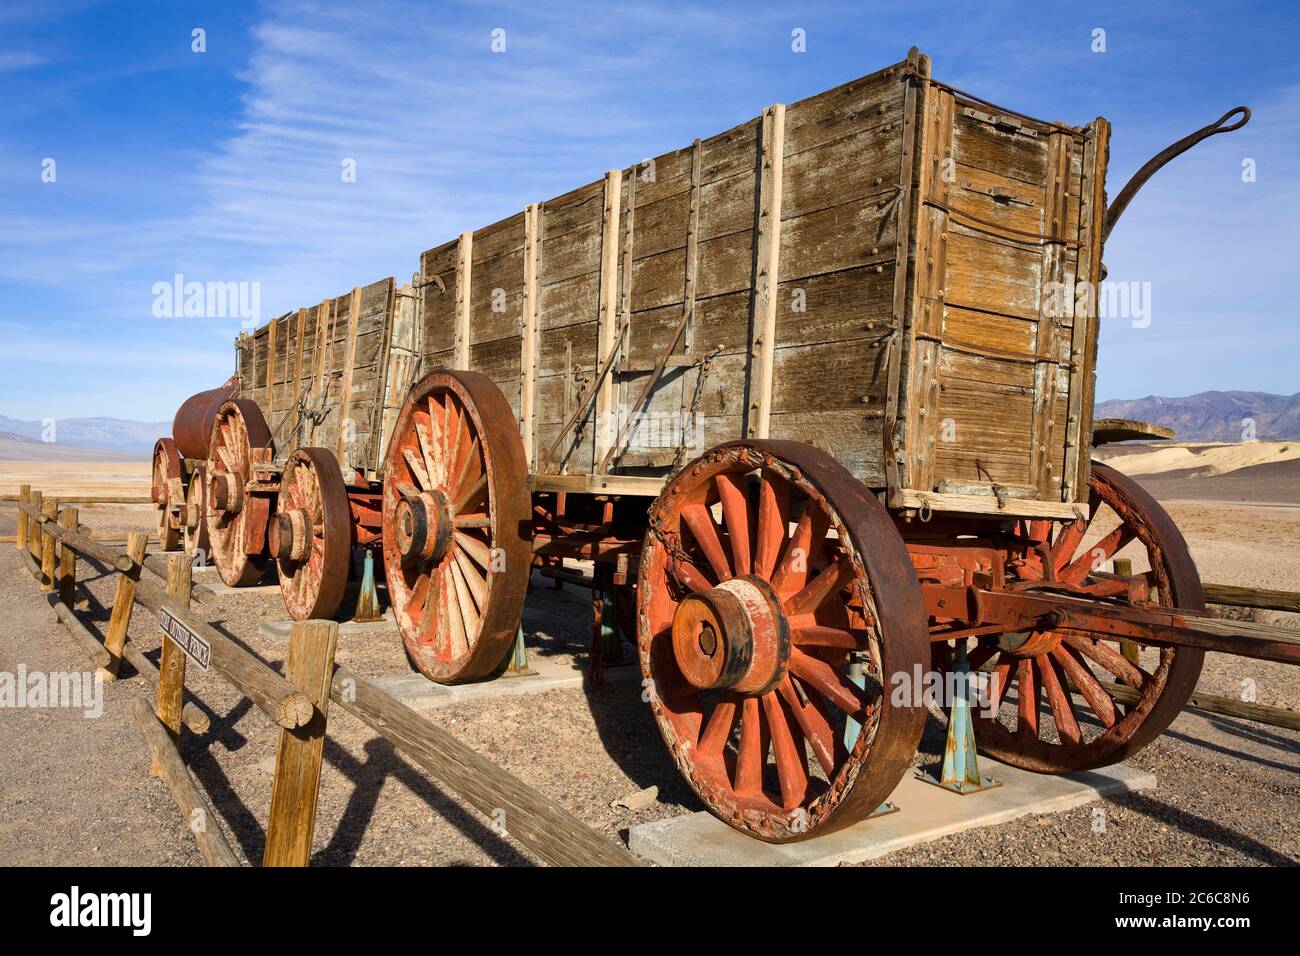 20 Mule Team Wagen bei der Harmony Borax Works, Death Valley Nationalpark, Kalifornien, USA, Nordamerika Stockfoto